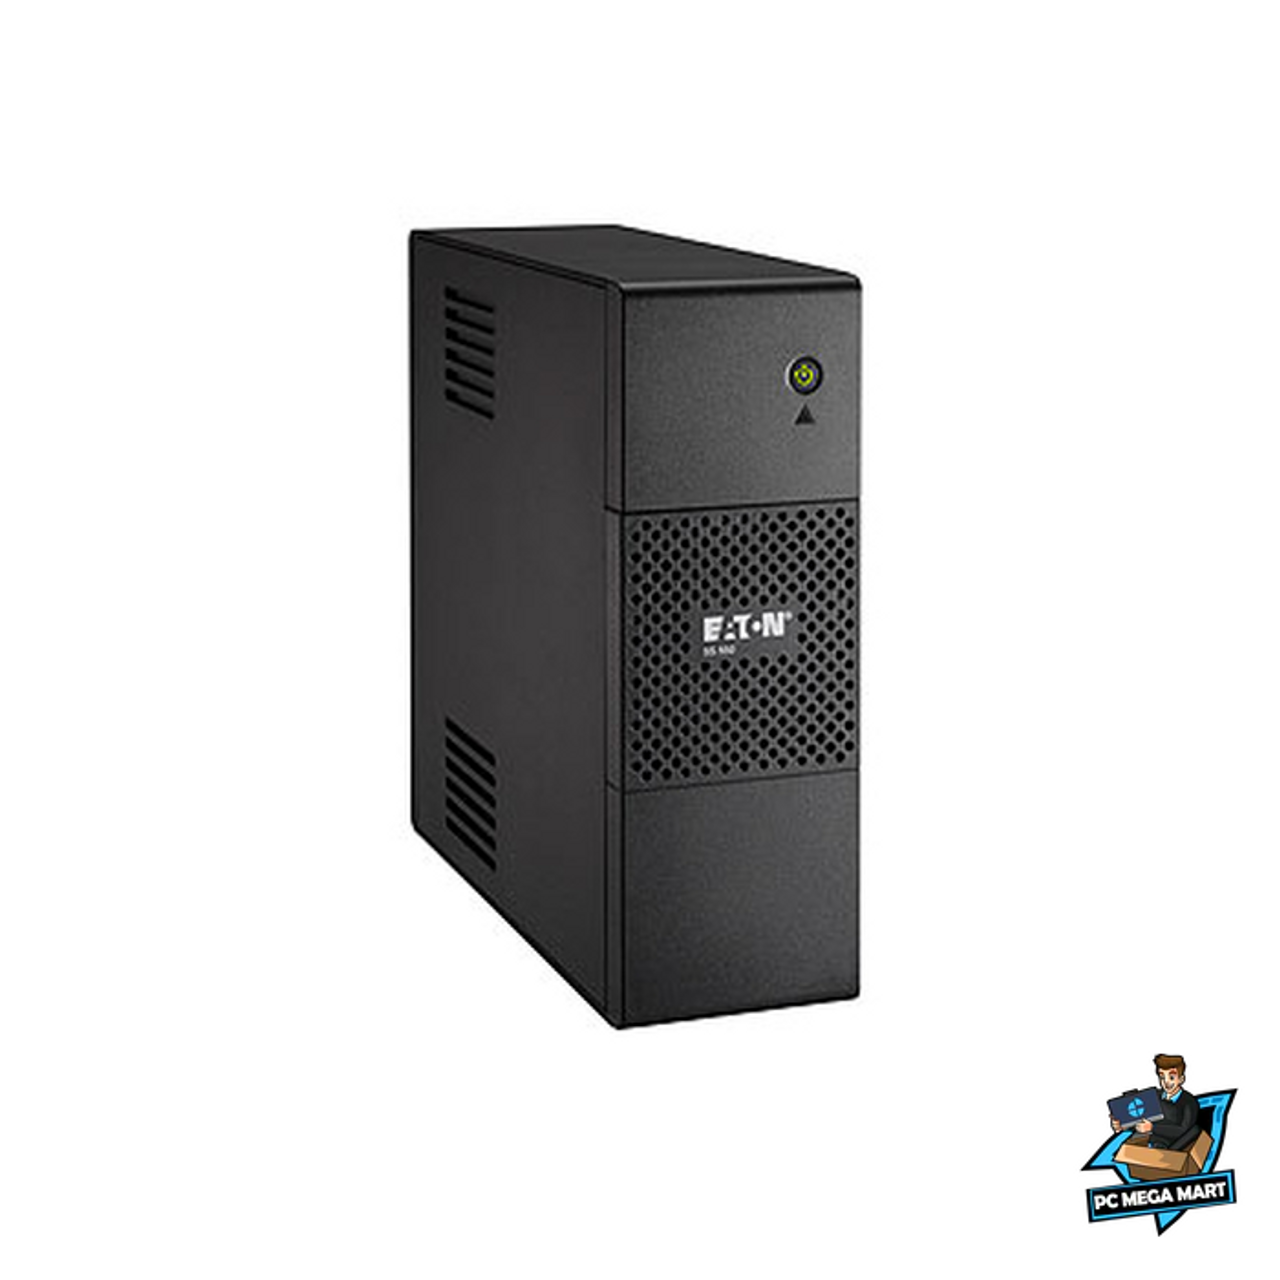 Eaton 5S550AU uninterruptible power supply (UPS) 550 VA 330 W 6 AC outlet(s) 1